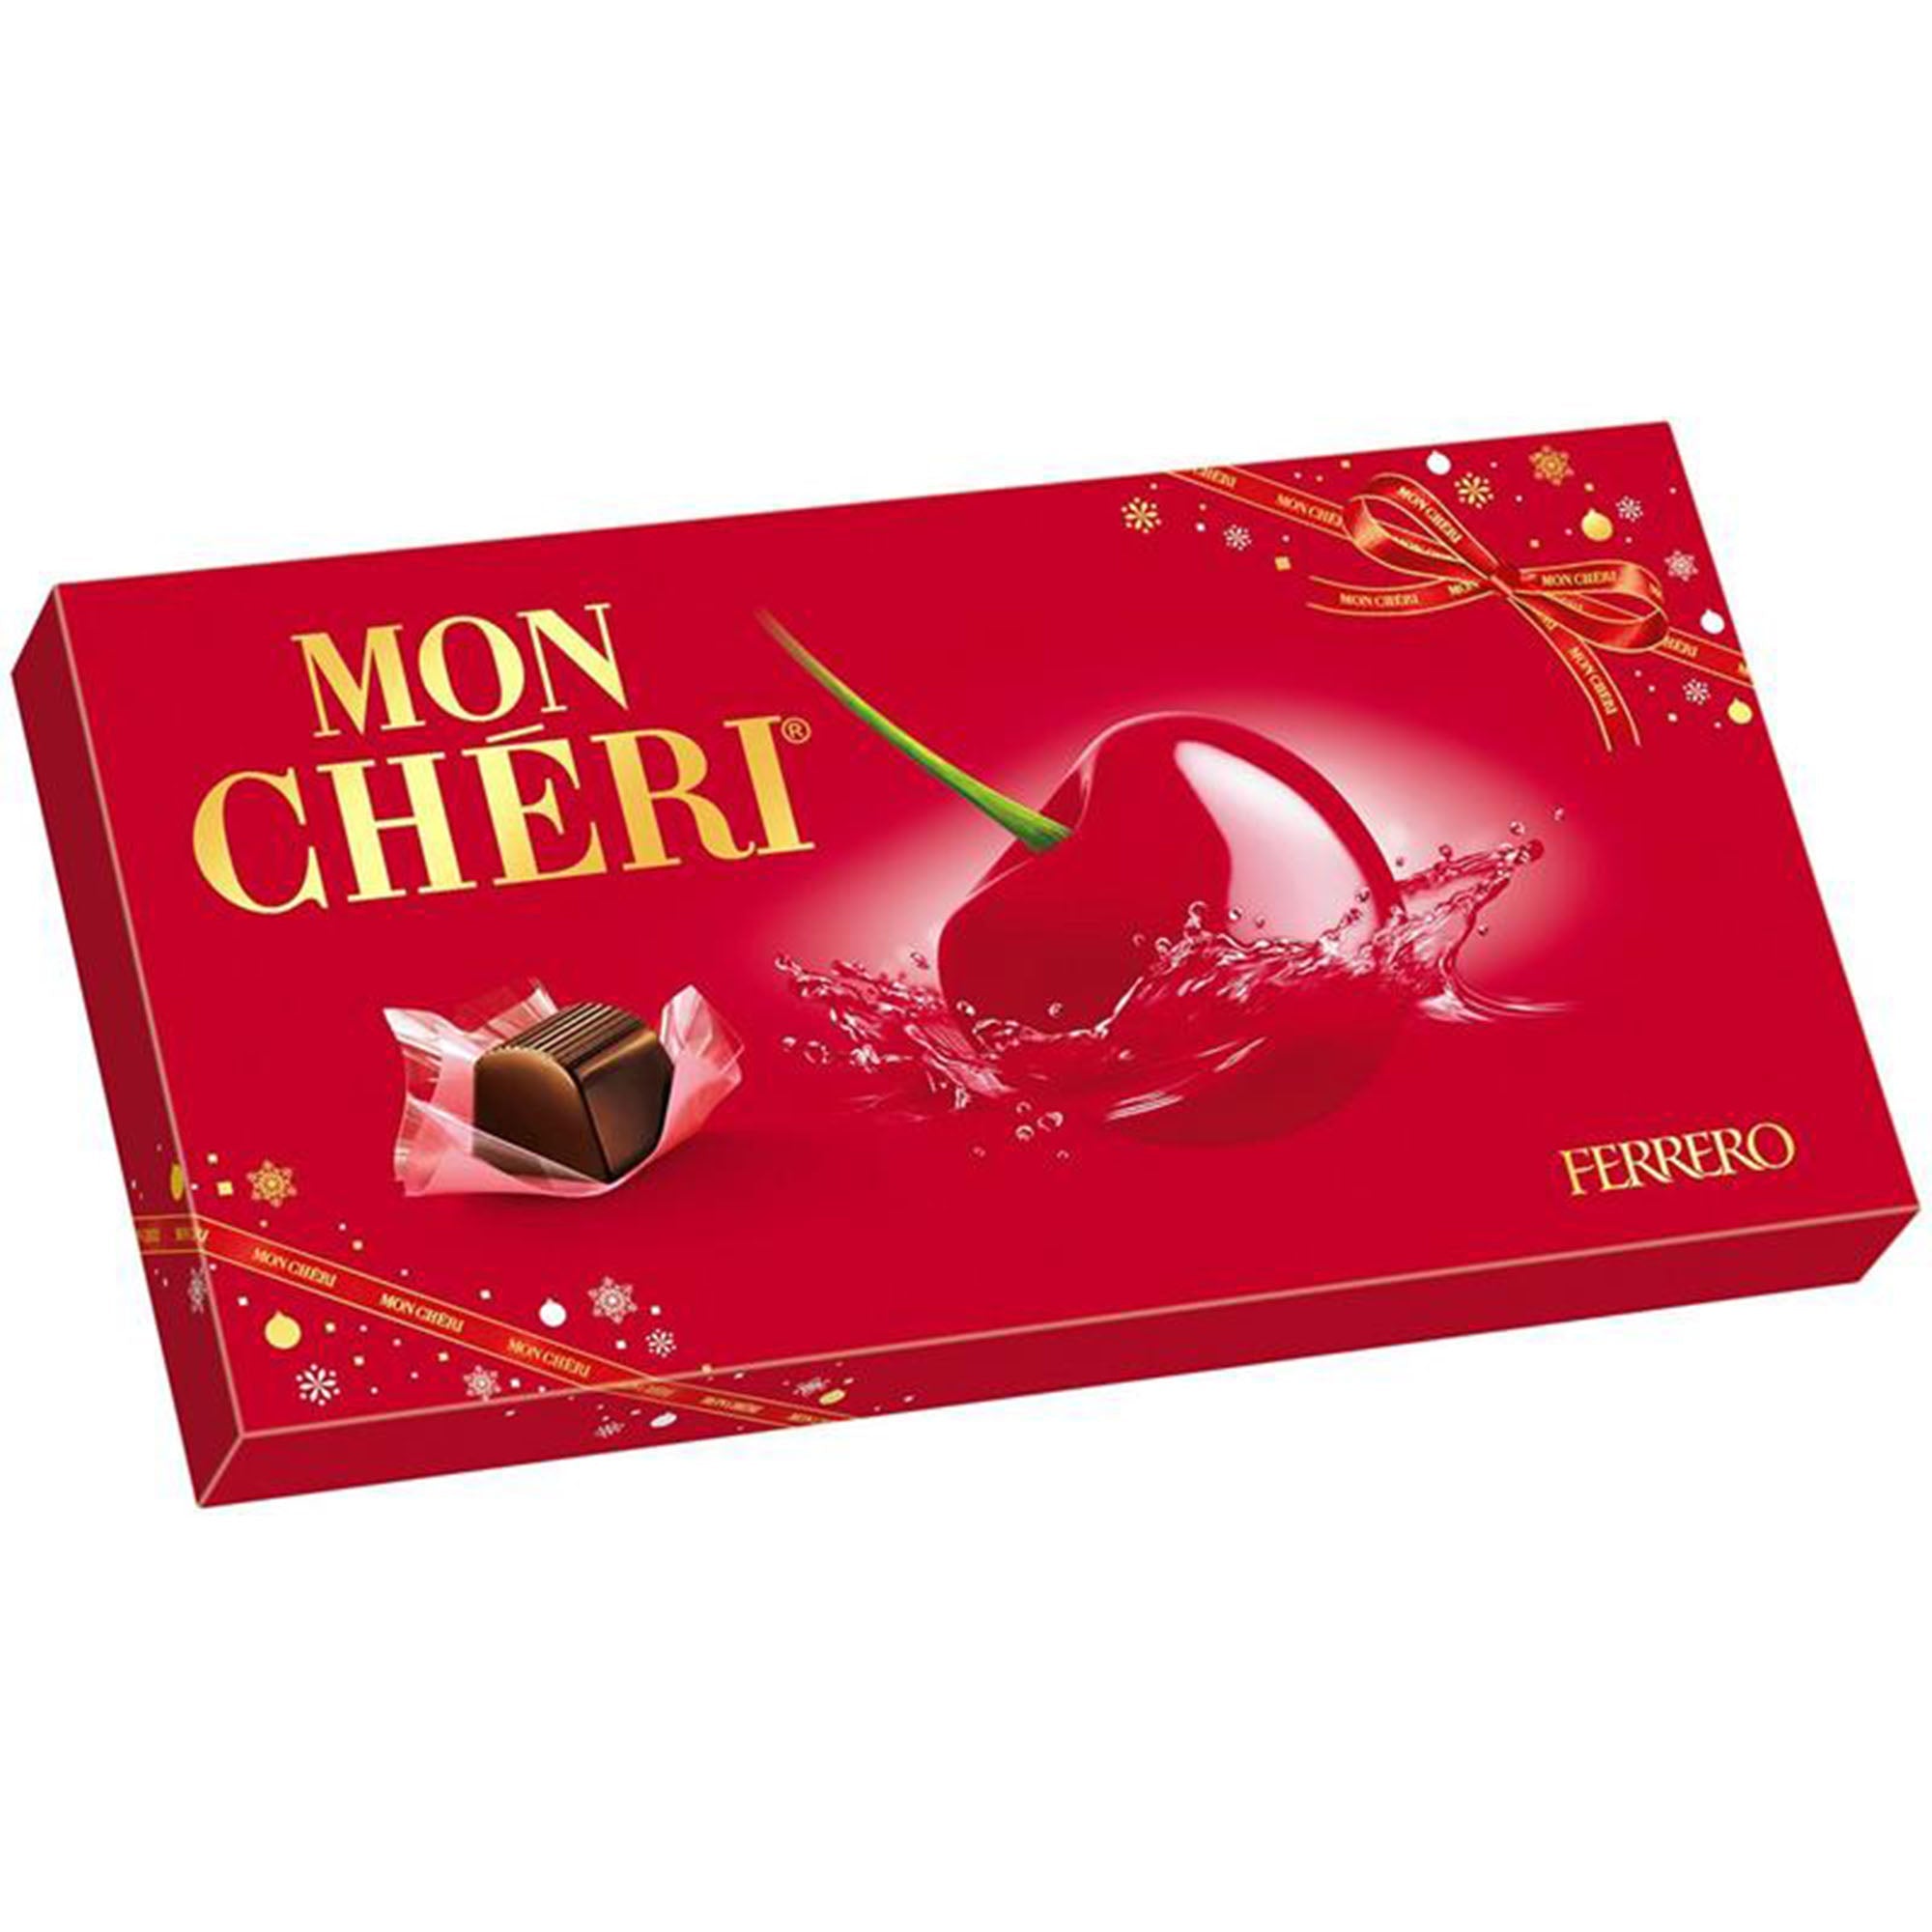 Résultats - Ferrero Mon Chéri